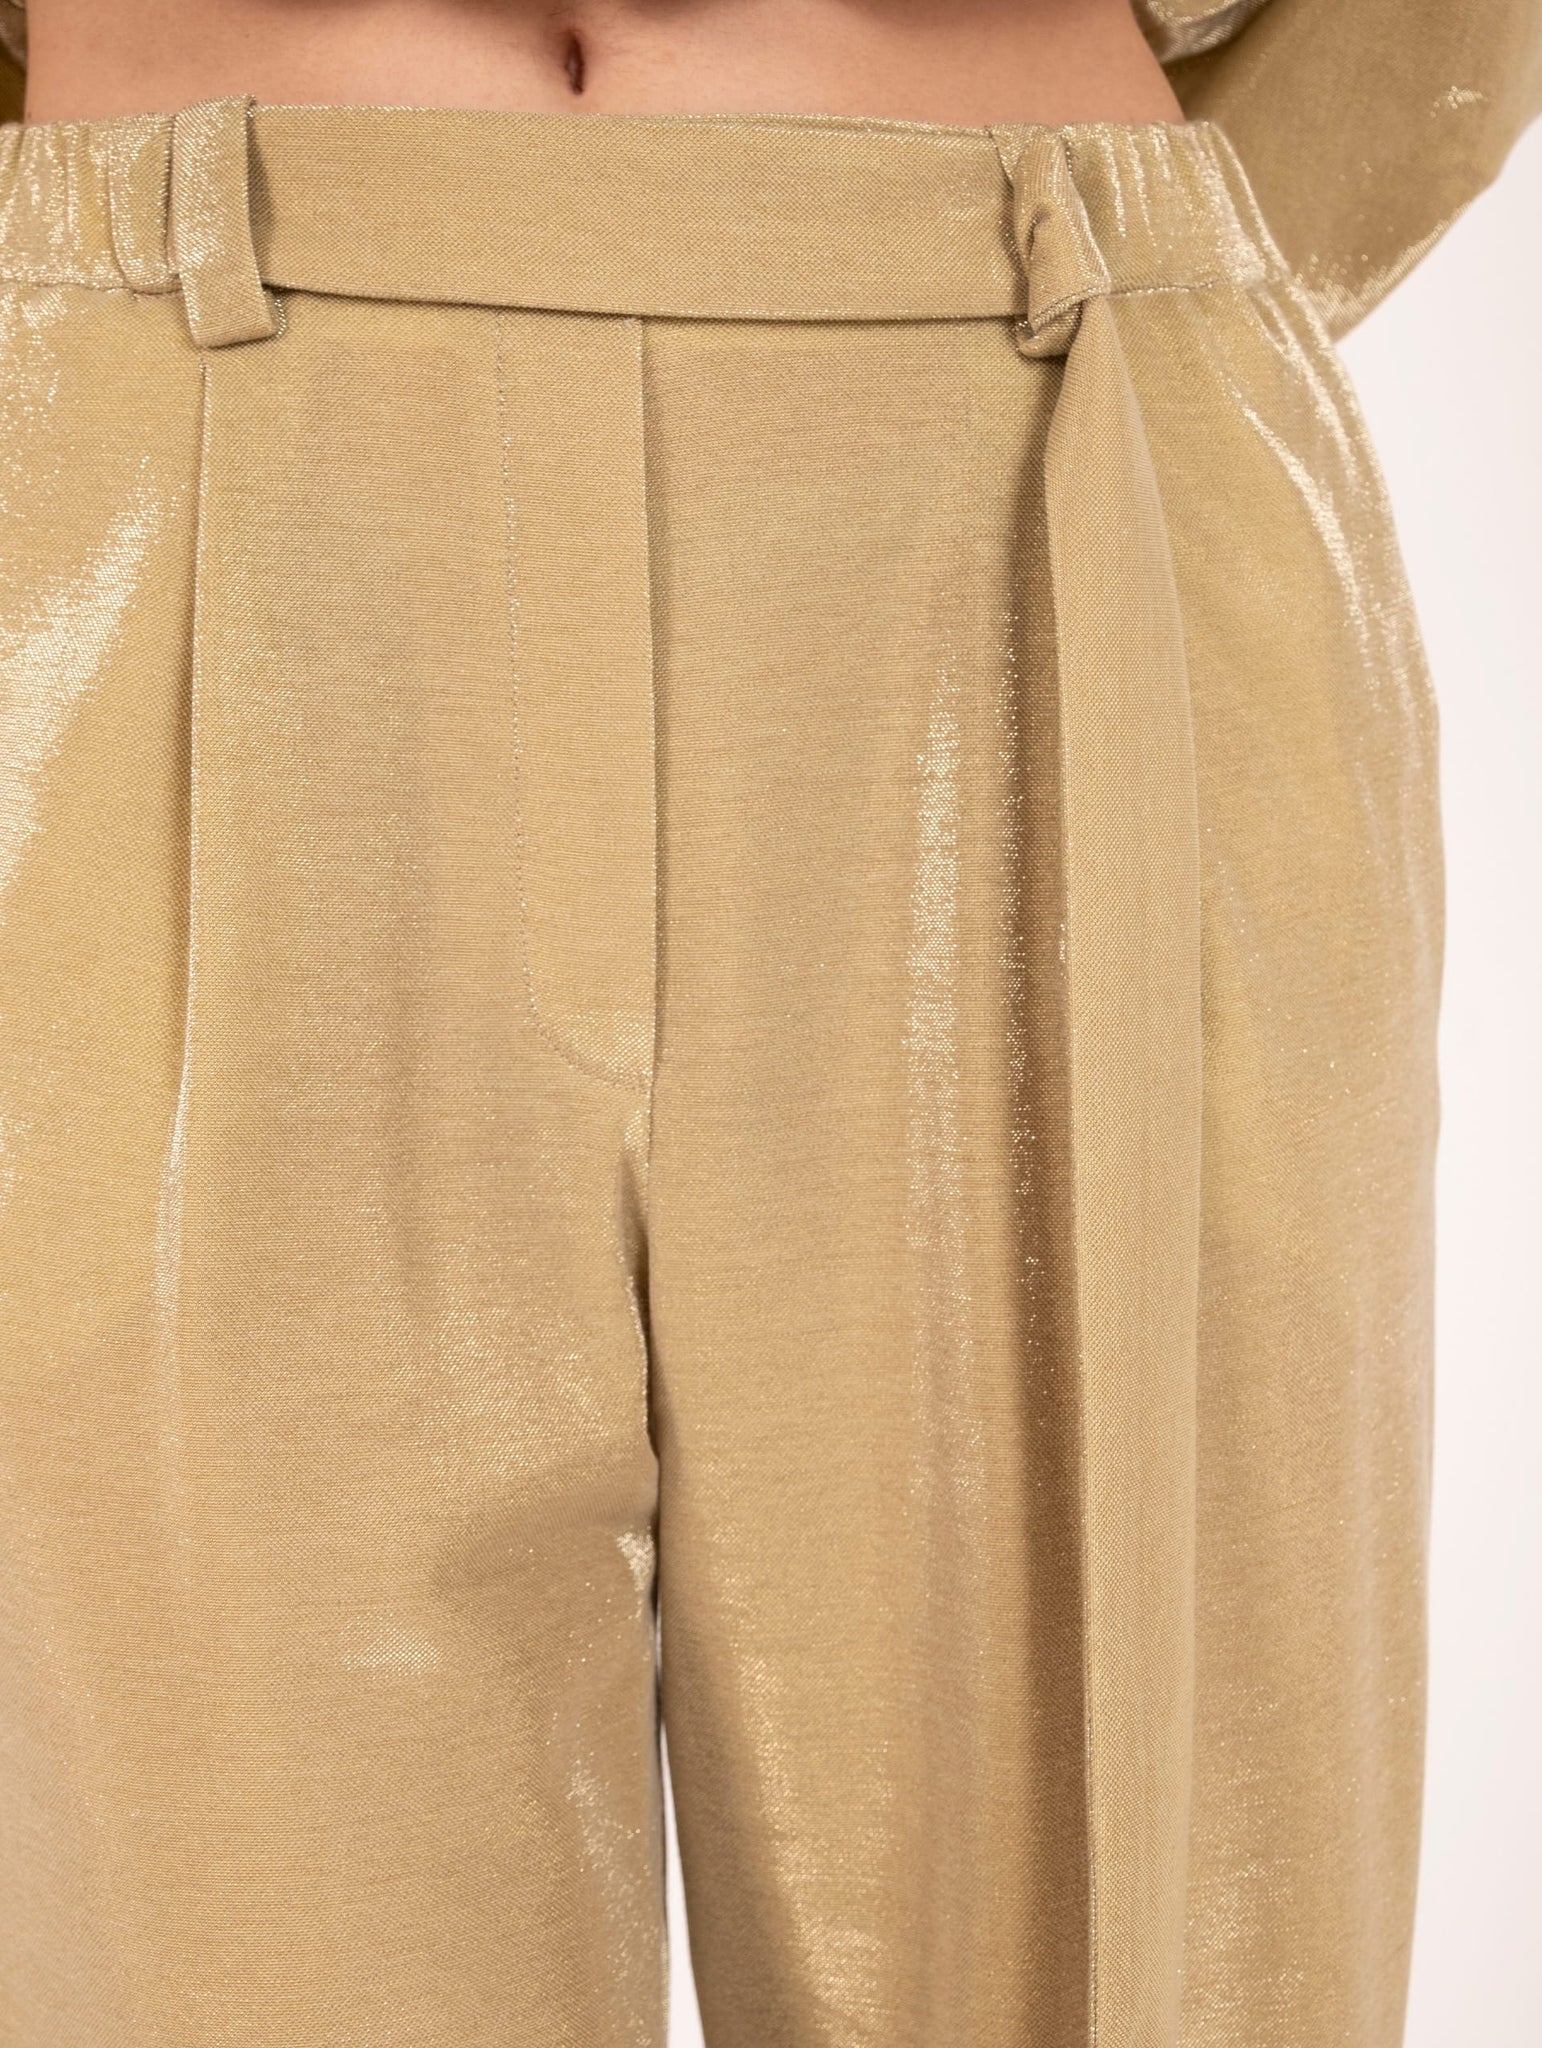 Pantalone Glittery Alysi in Cotone Oro